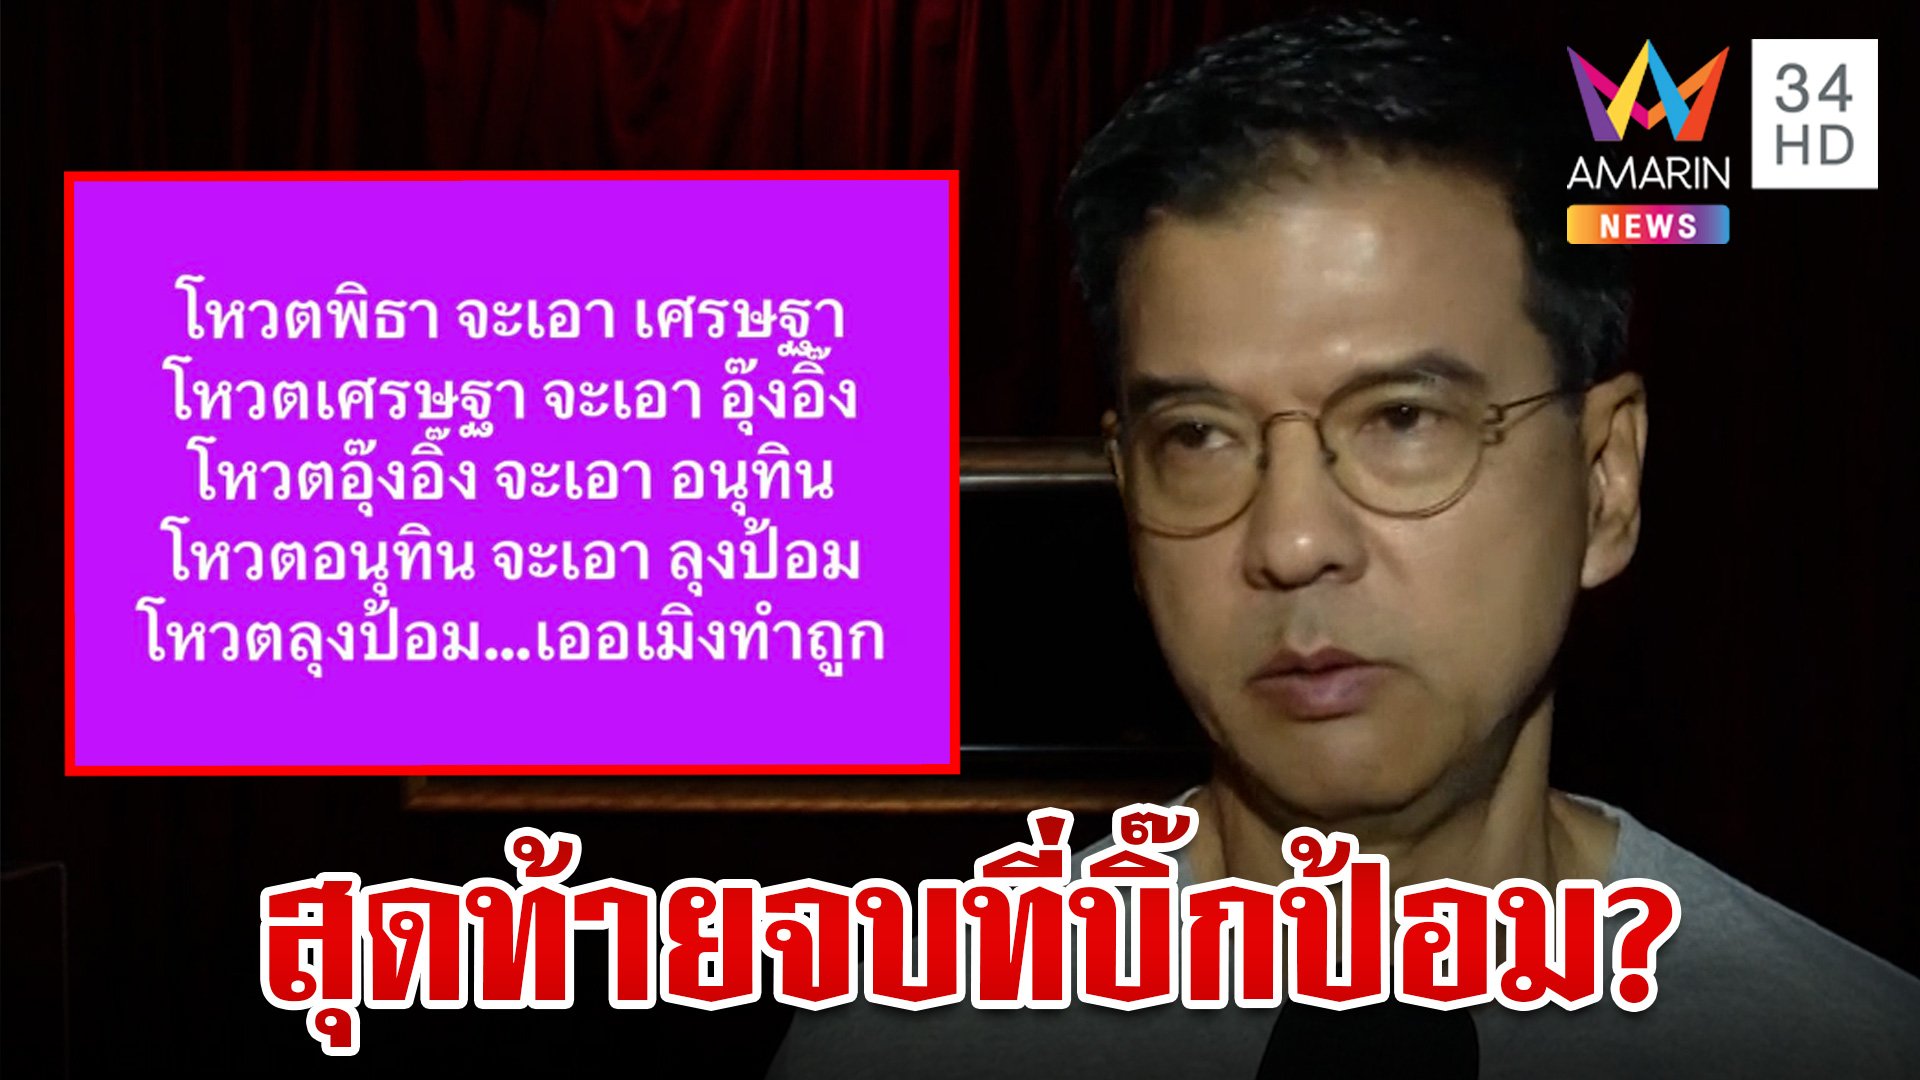 "ชัยธวัช" ห่วงเพื่อไทยตั้งรัฐบาลไม่ง่าย "ศิธา" เผยทฤษฎีบันได 5 ขั้น สุดท้ายลงเอย "บิ๊กป้อม" | ทุบโต๊ะข่าว | 14 ส.ค. 66 | AMARIN TVHD34